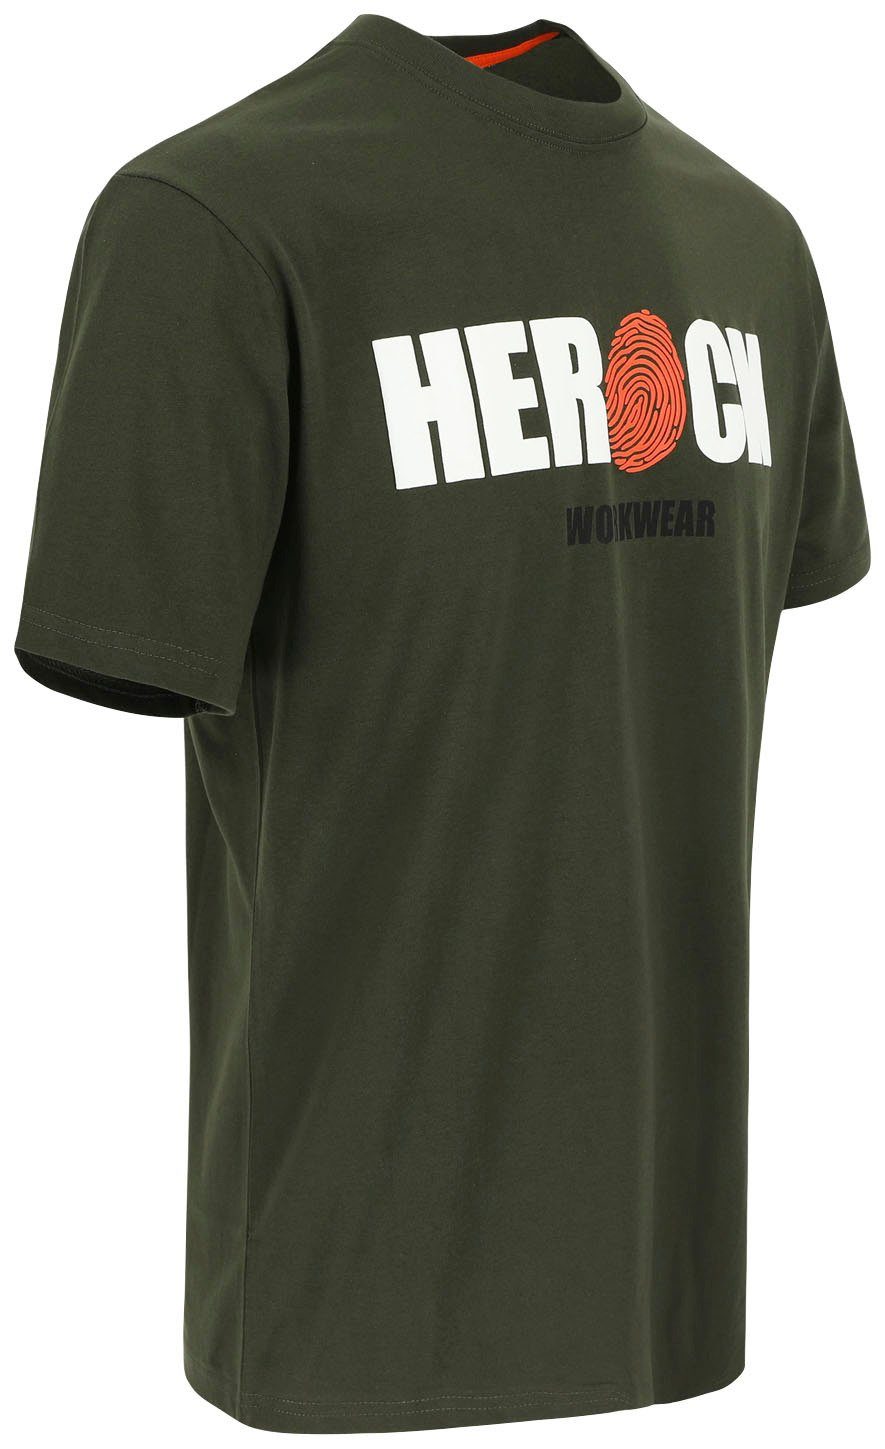 mit khaki ENI T-Shirt angenehmes Herock®-Aufdruck, Tragegefühl Herock Rundhals, Baumwolle,